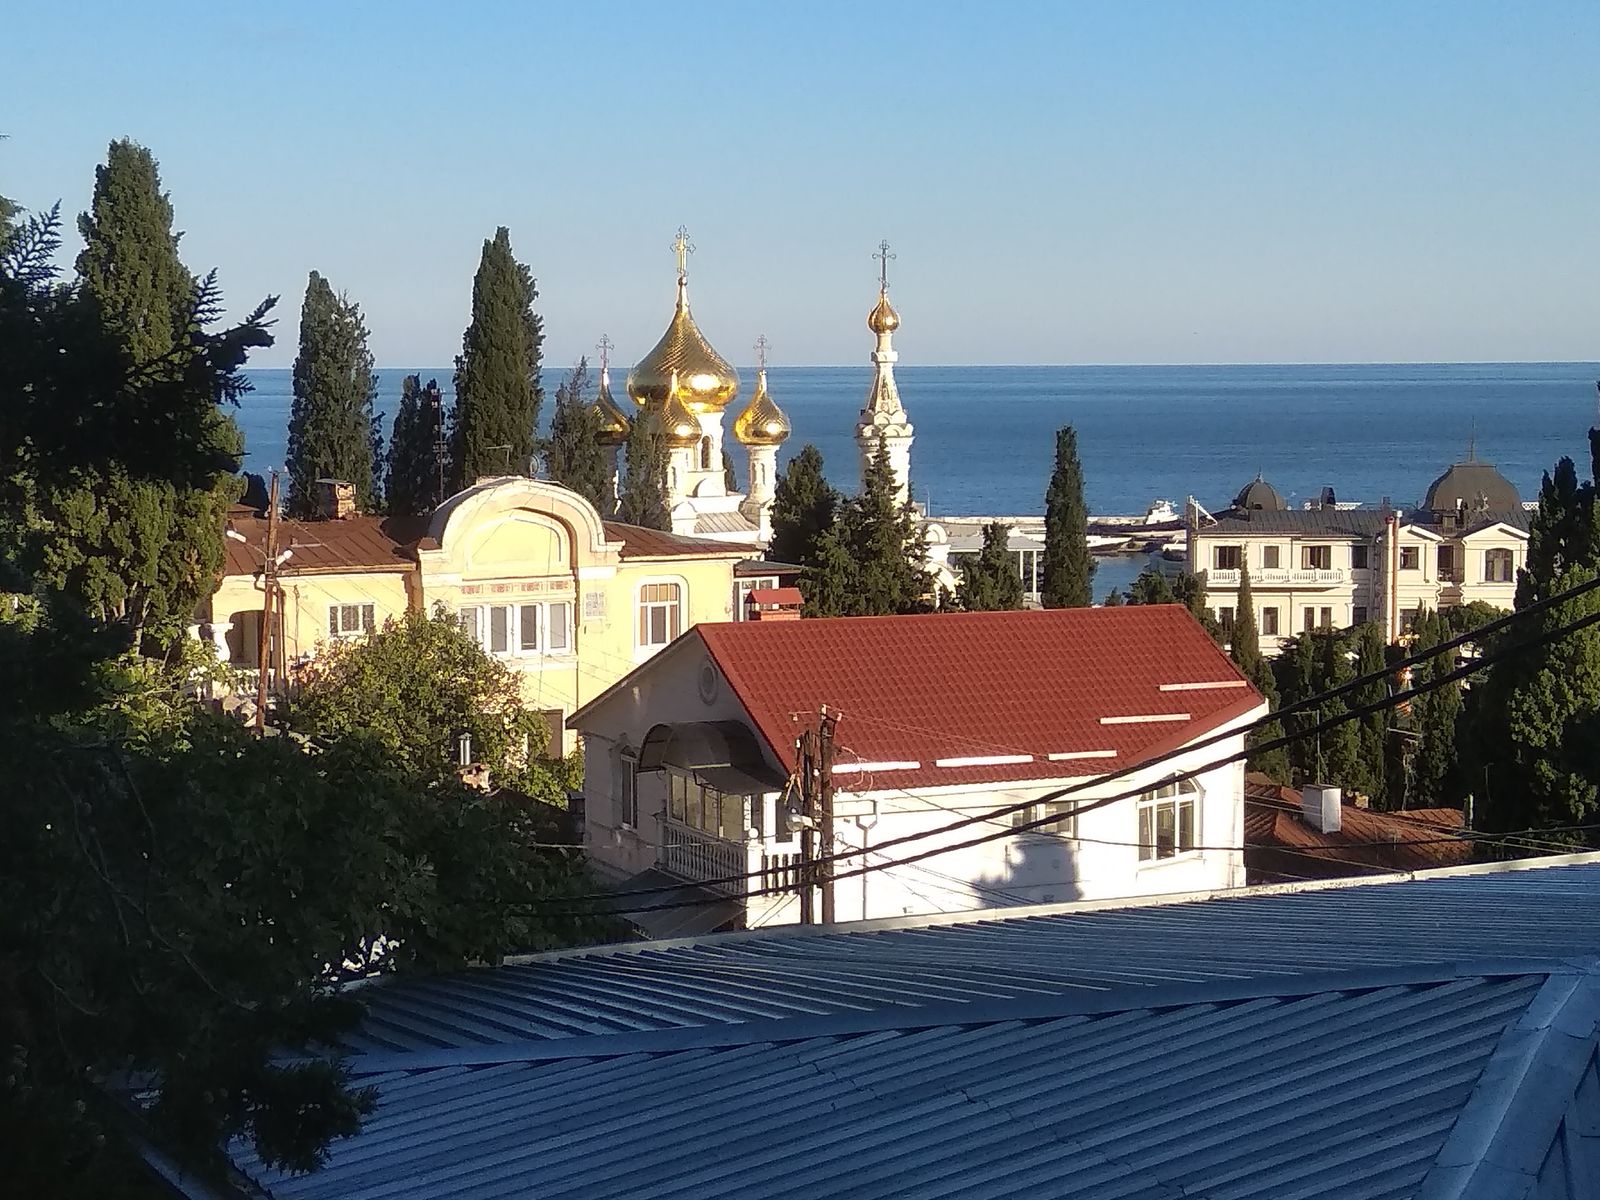 Вид от дома Г.Ф. Ярцева на собор Святого благоверного князя Александра Невского и дом причта